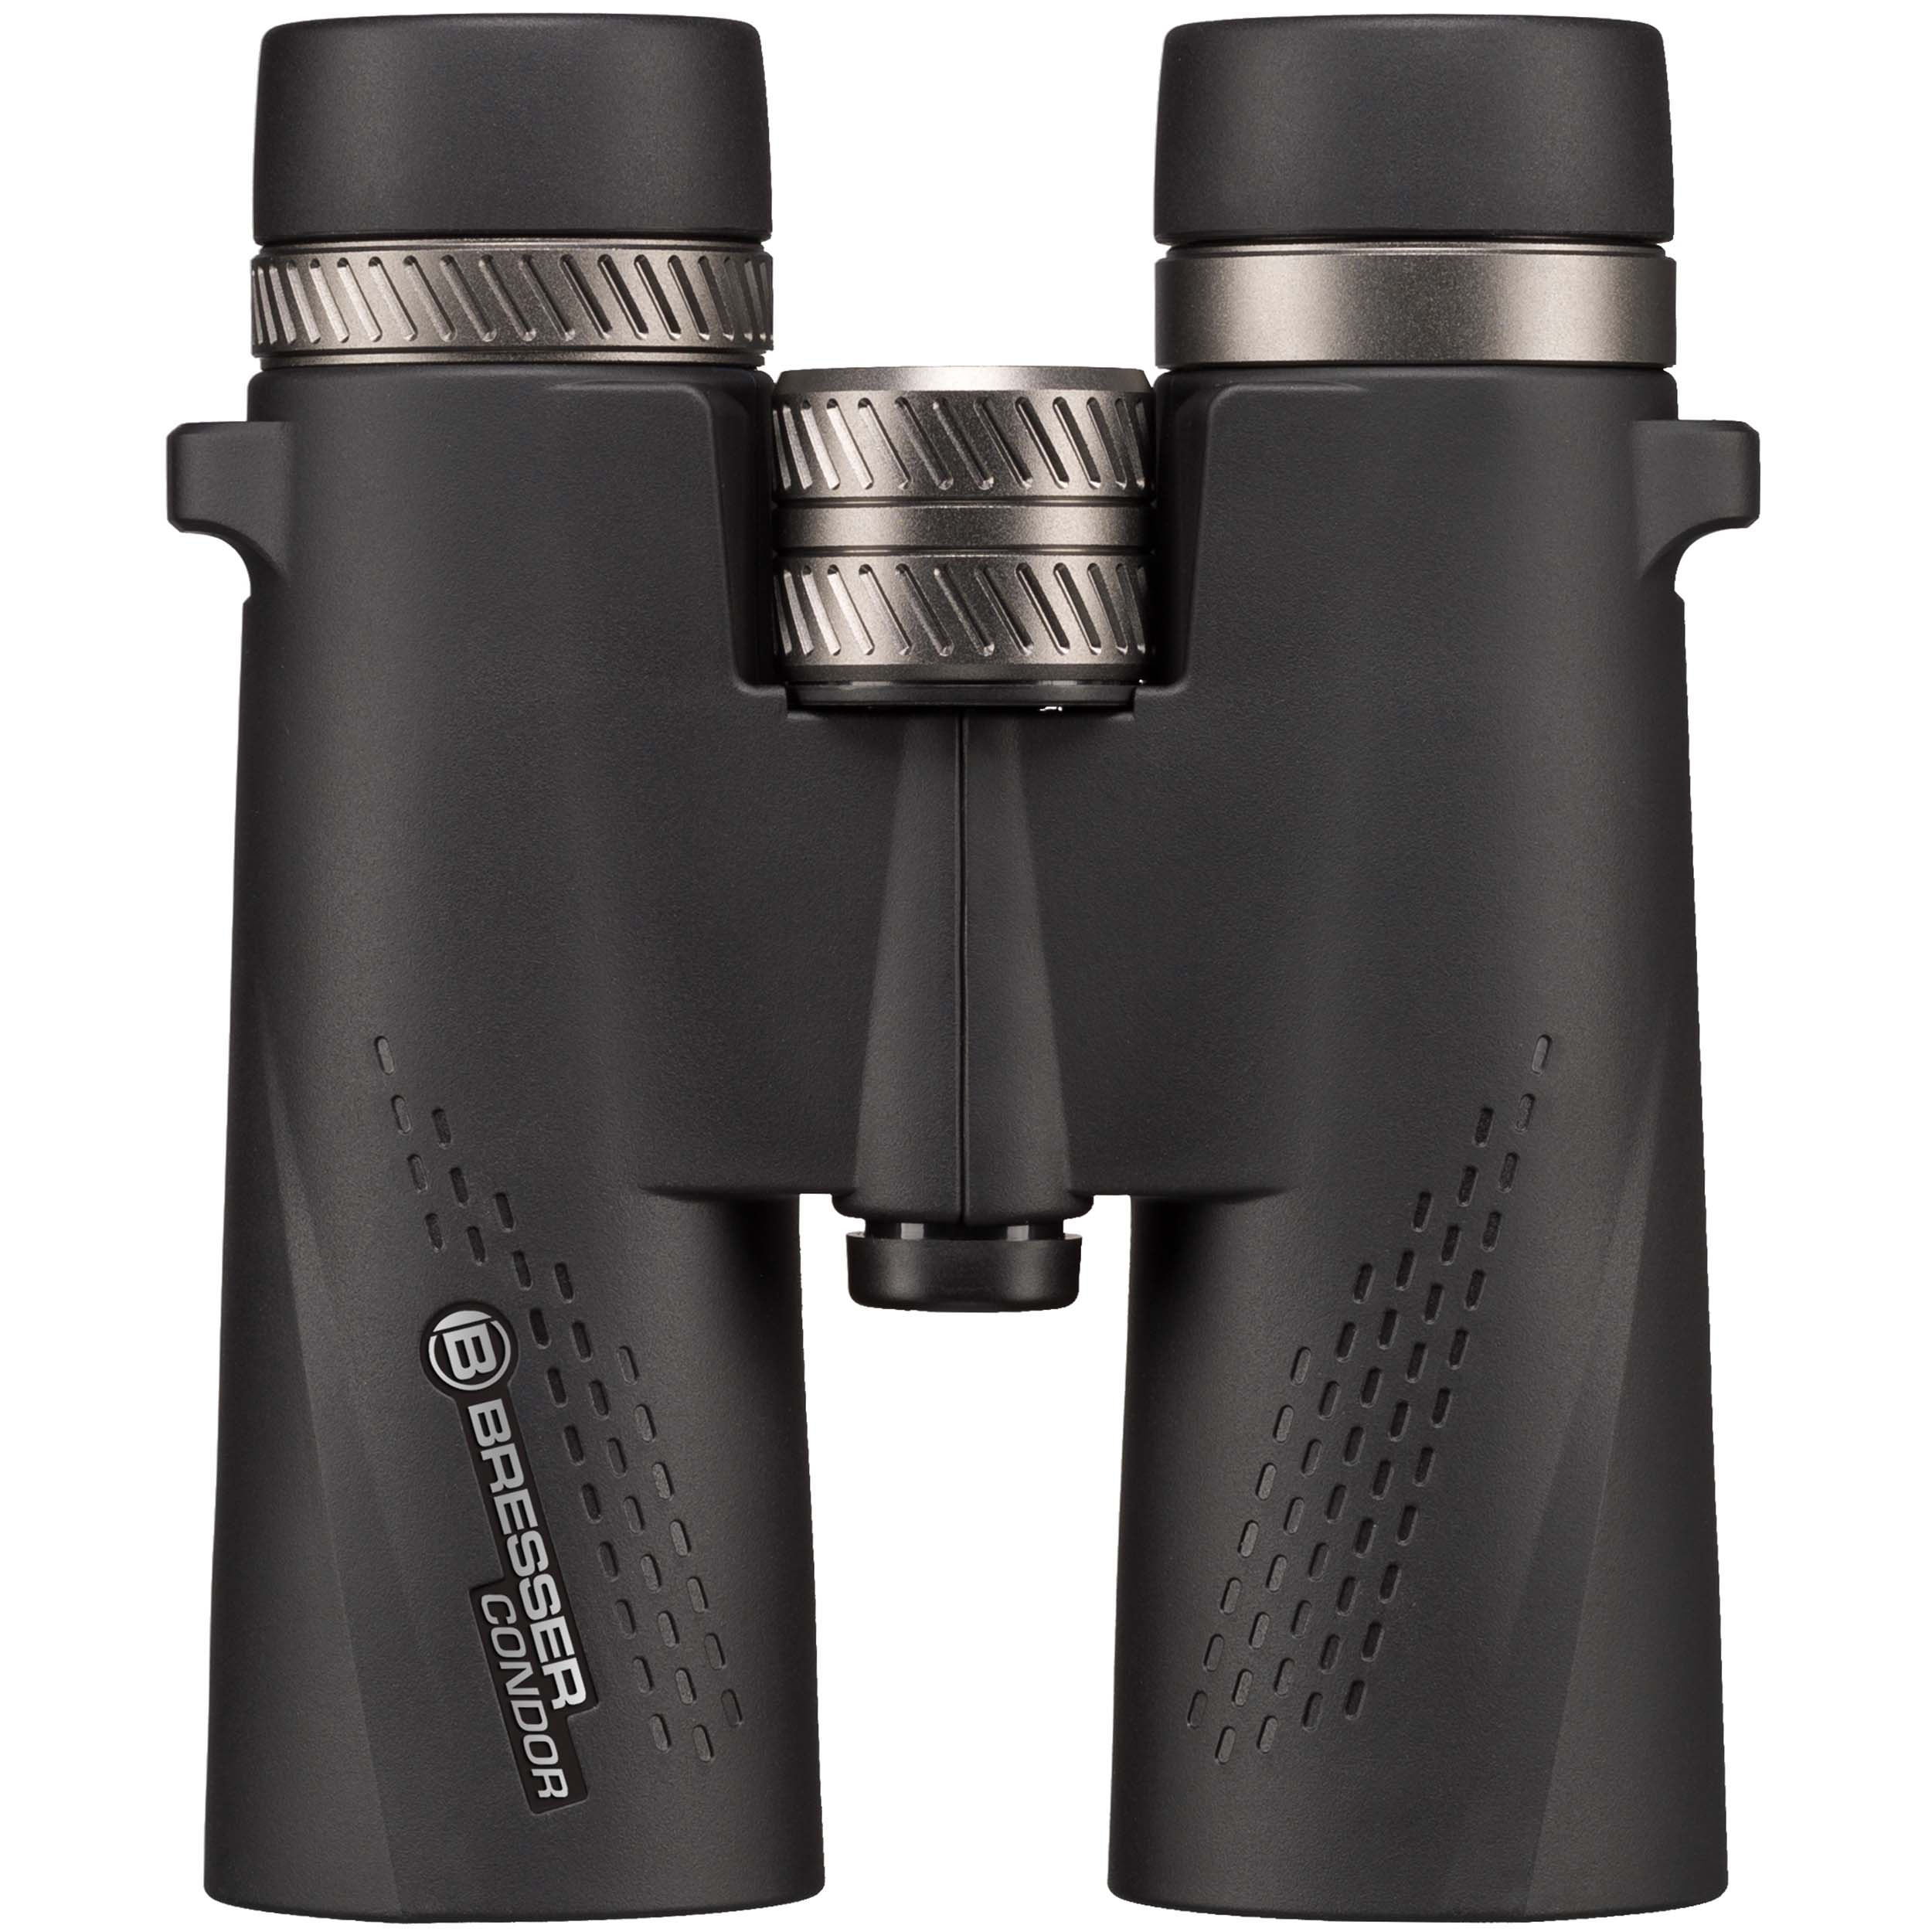 BRESSER Condor 8x42 Binoculars with UR Coating